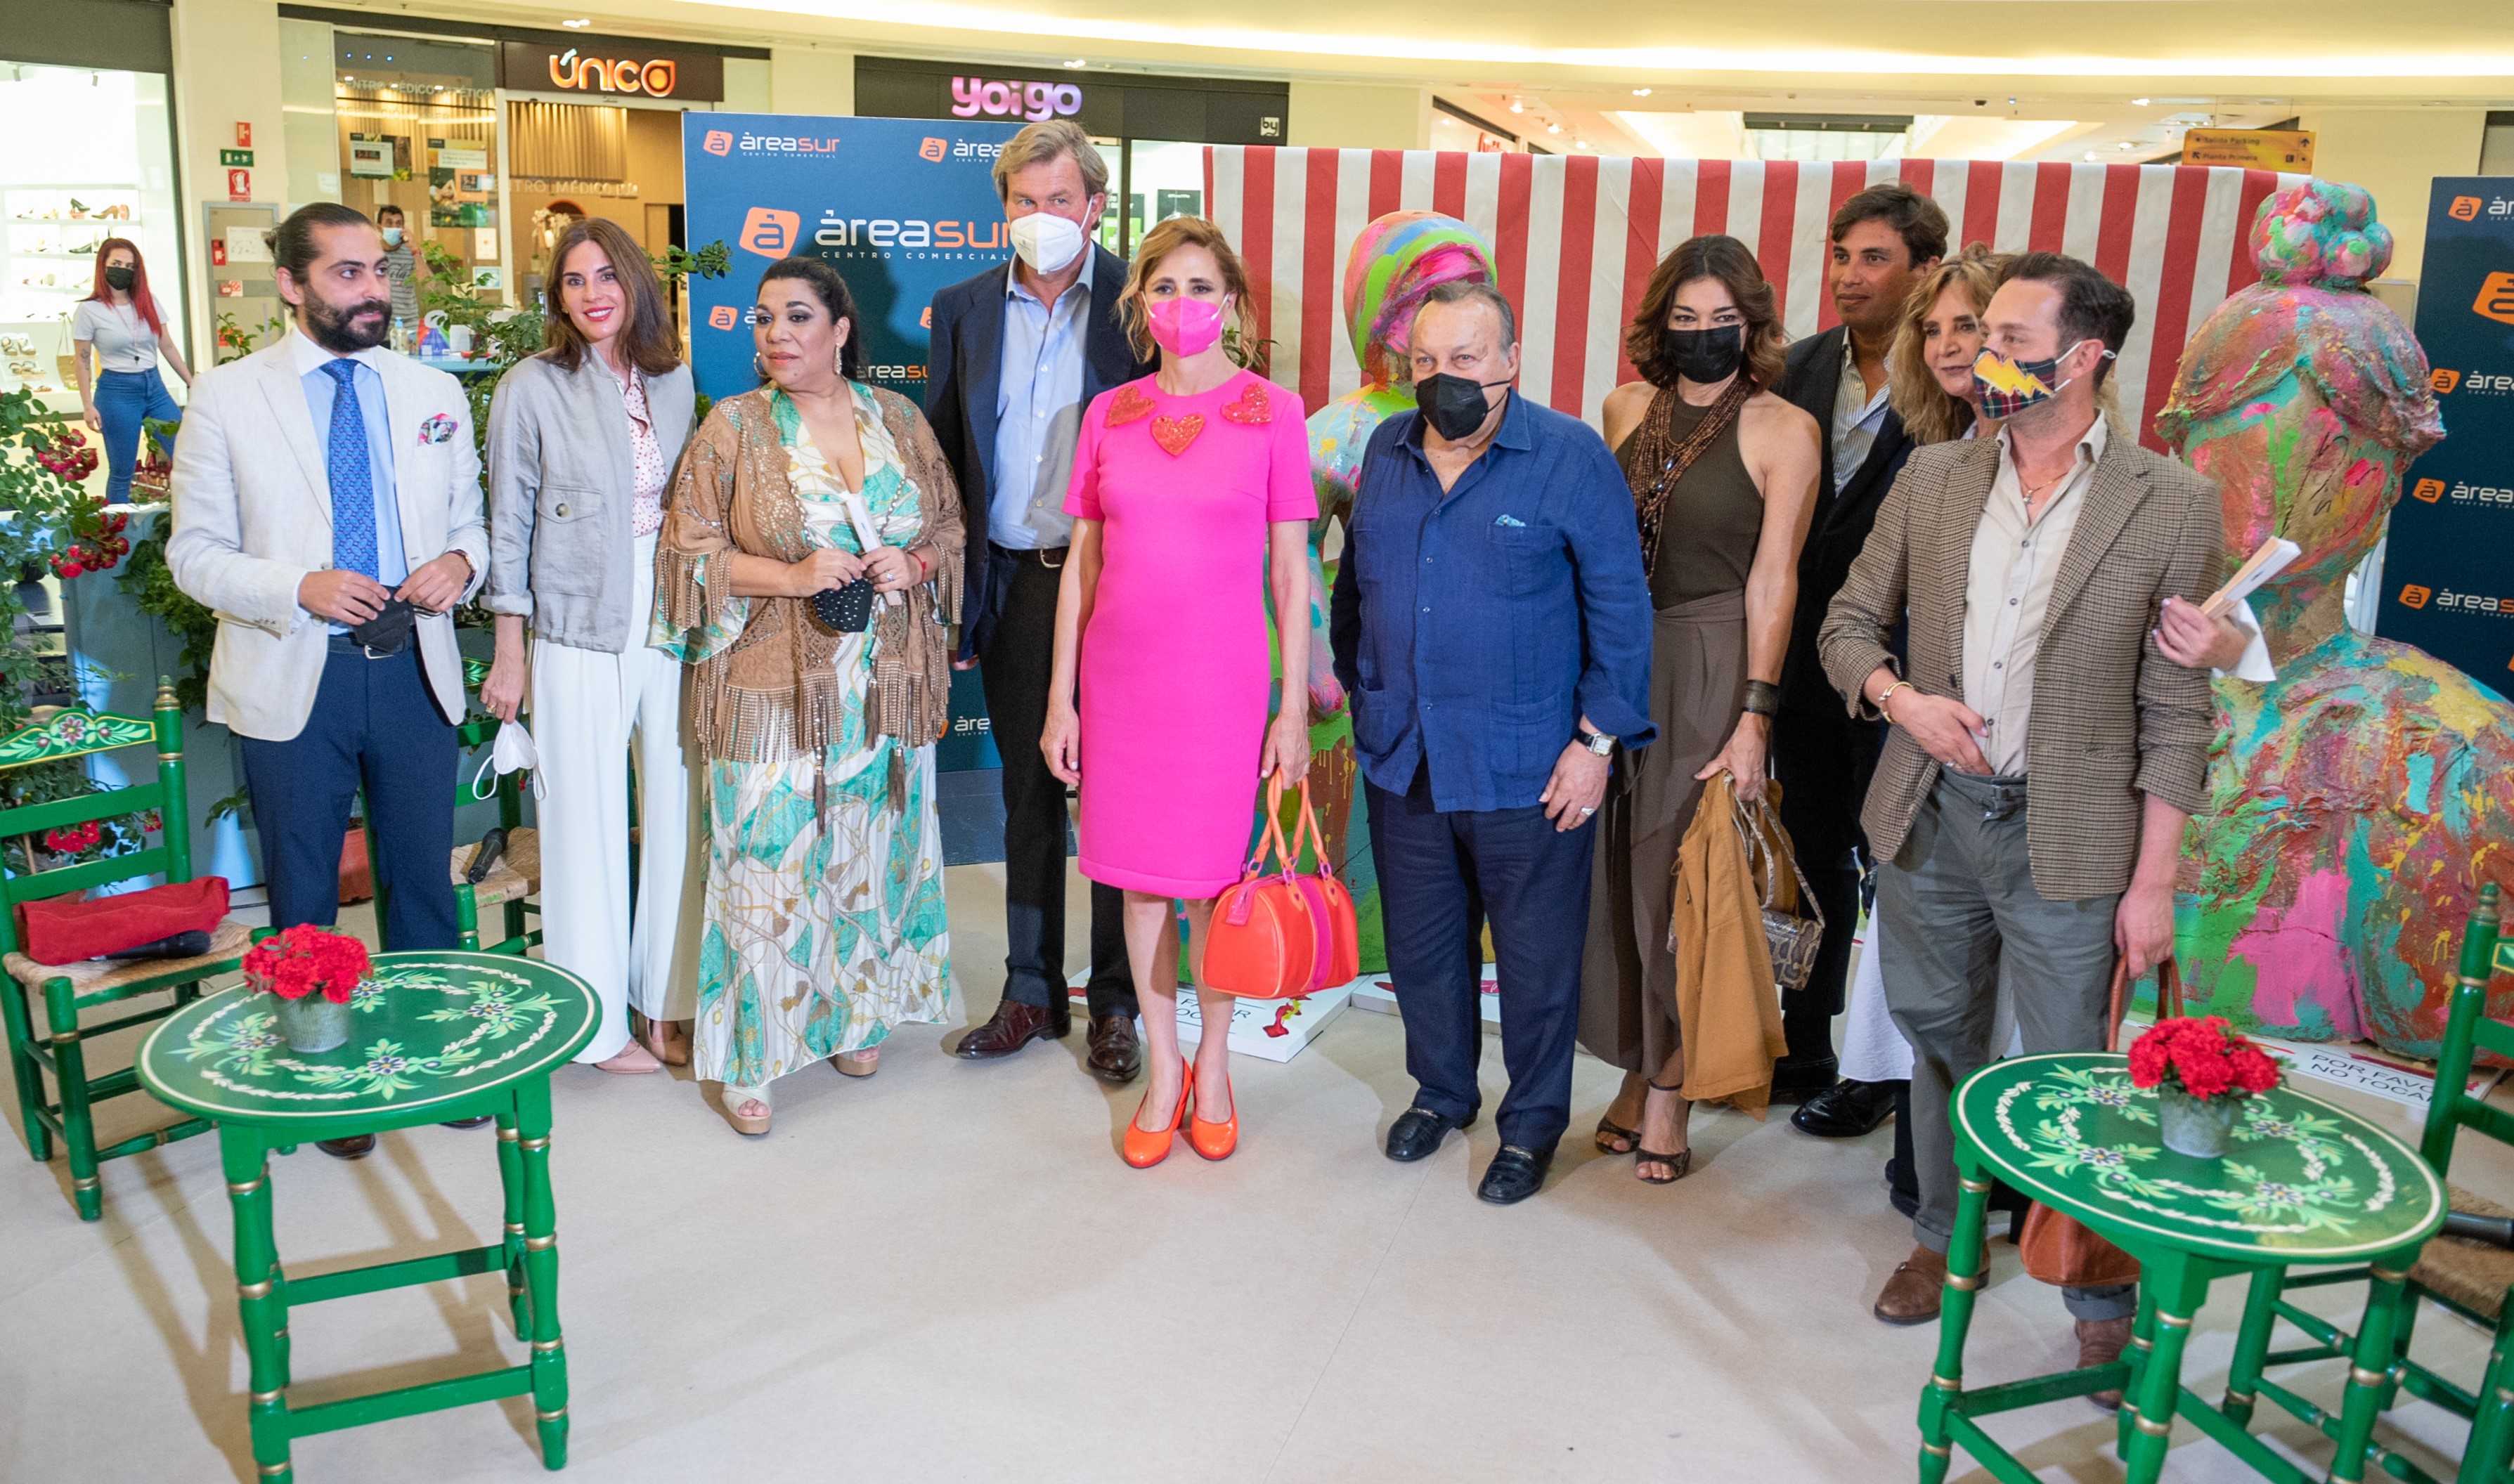 El mundo taurino, del arte o la moda se cita en Área Sur en homenaje a la Feria